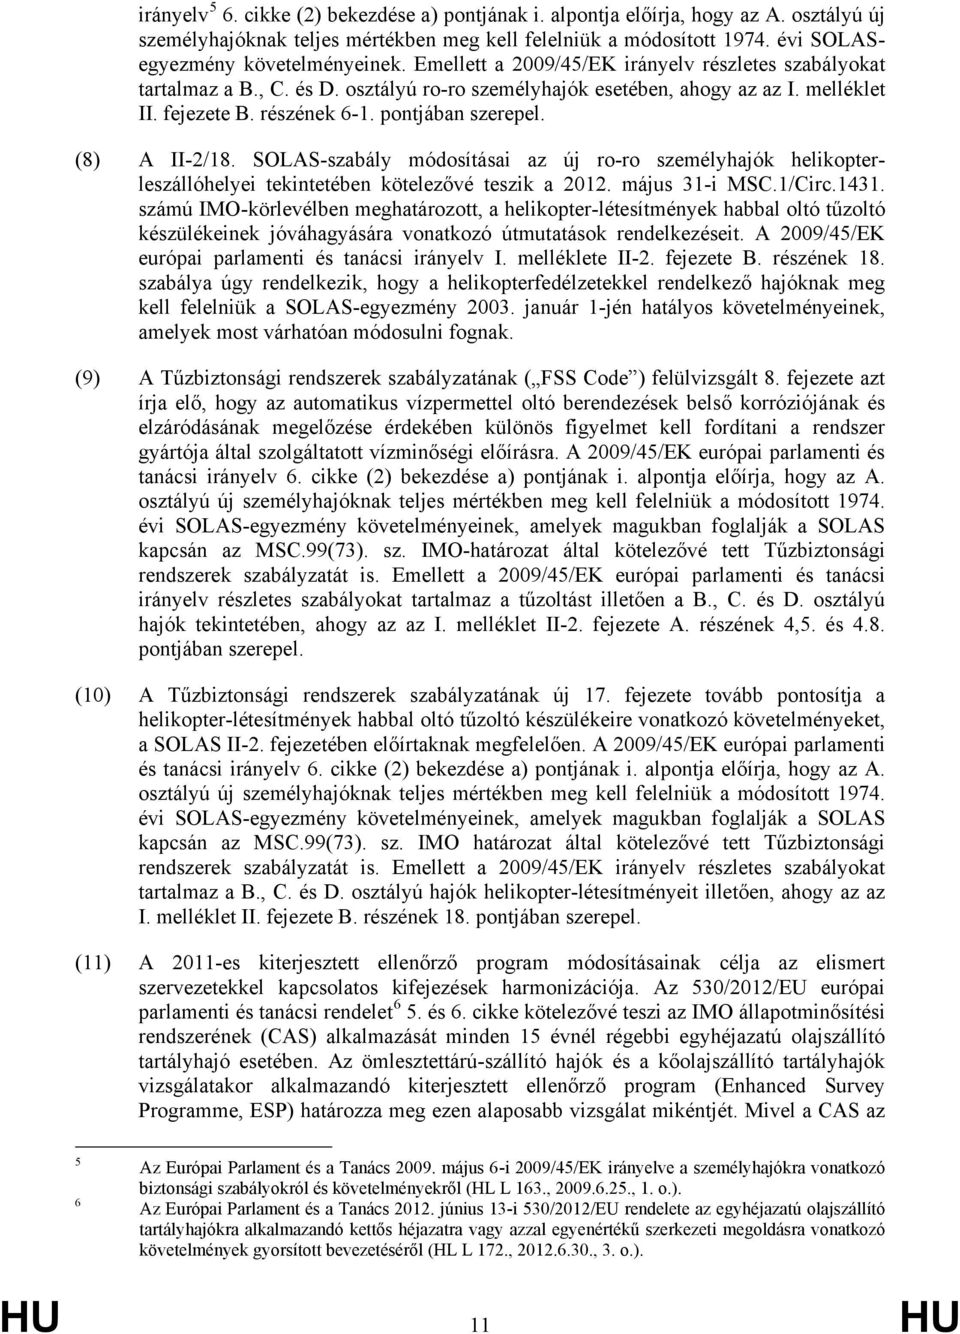 (8) A II-2/18. SOLAS-szabály módosításai az új ro-ro személyhajók helikopterleszállóhelyei tekintetében kötelezővé teszik a 2012. május 31-i MSC.1/Circ.1431.